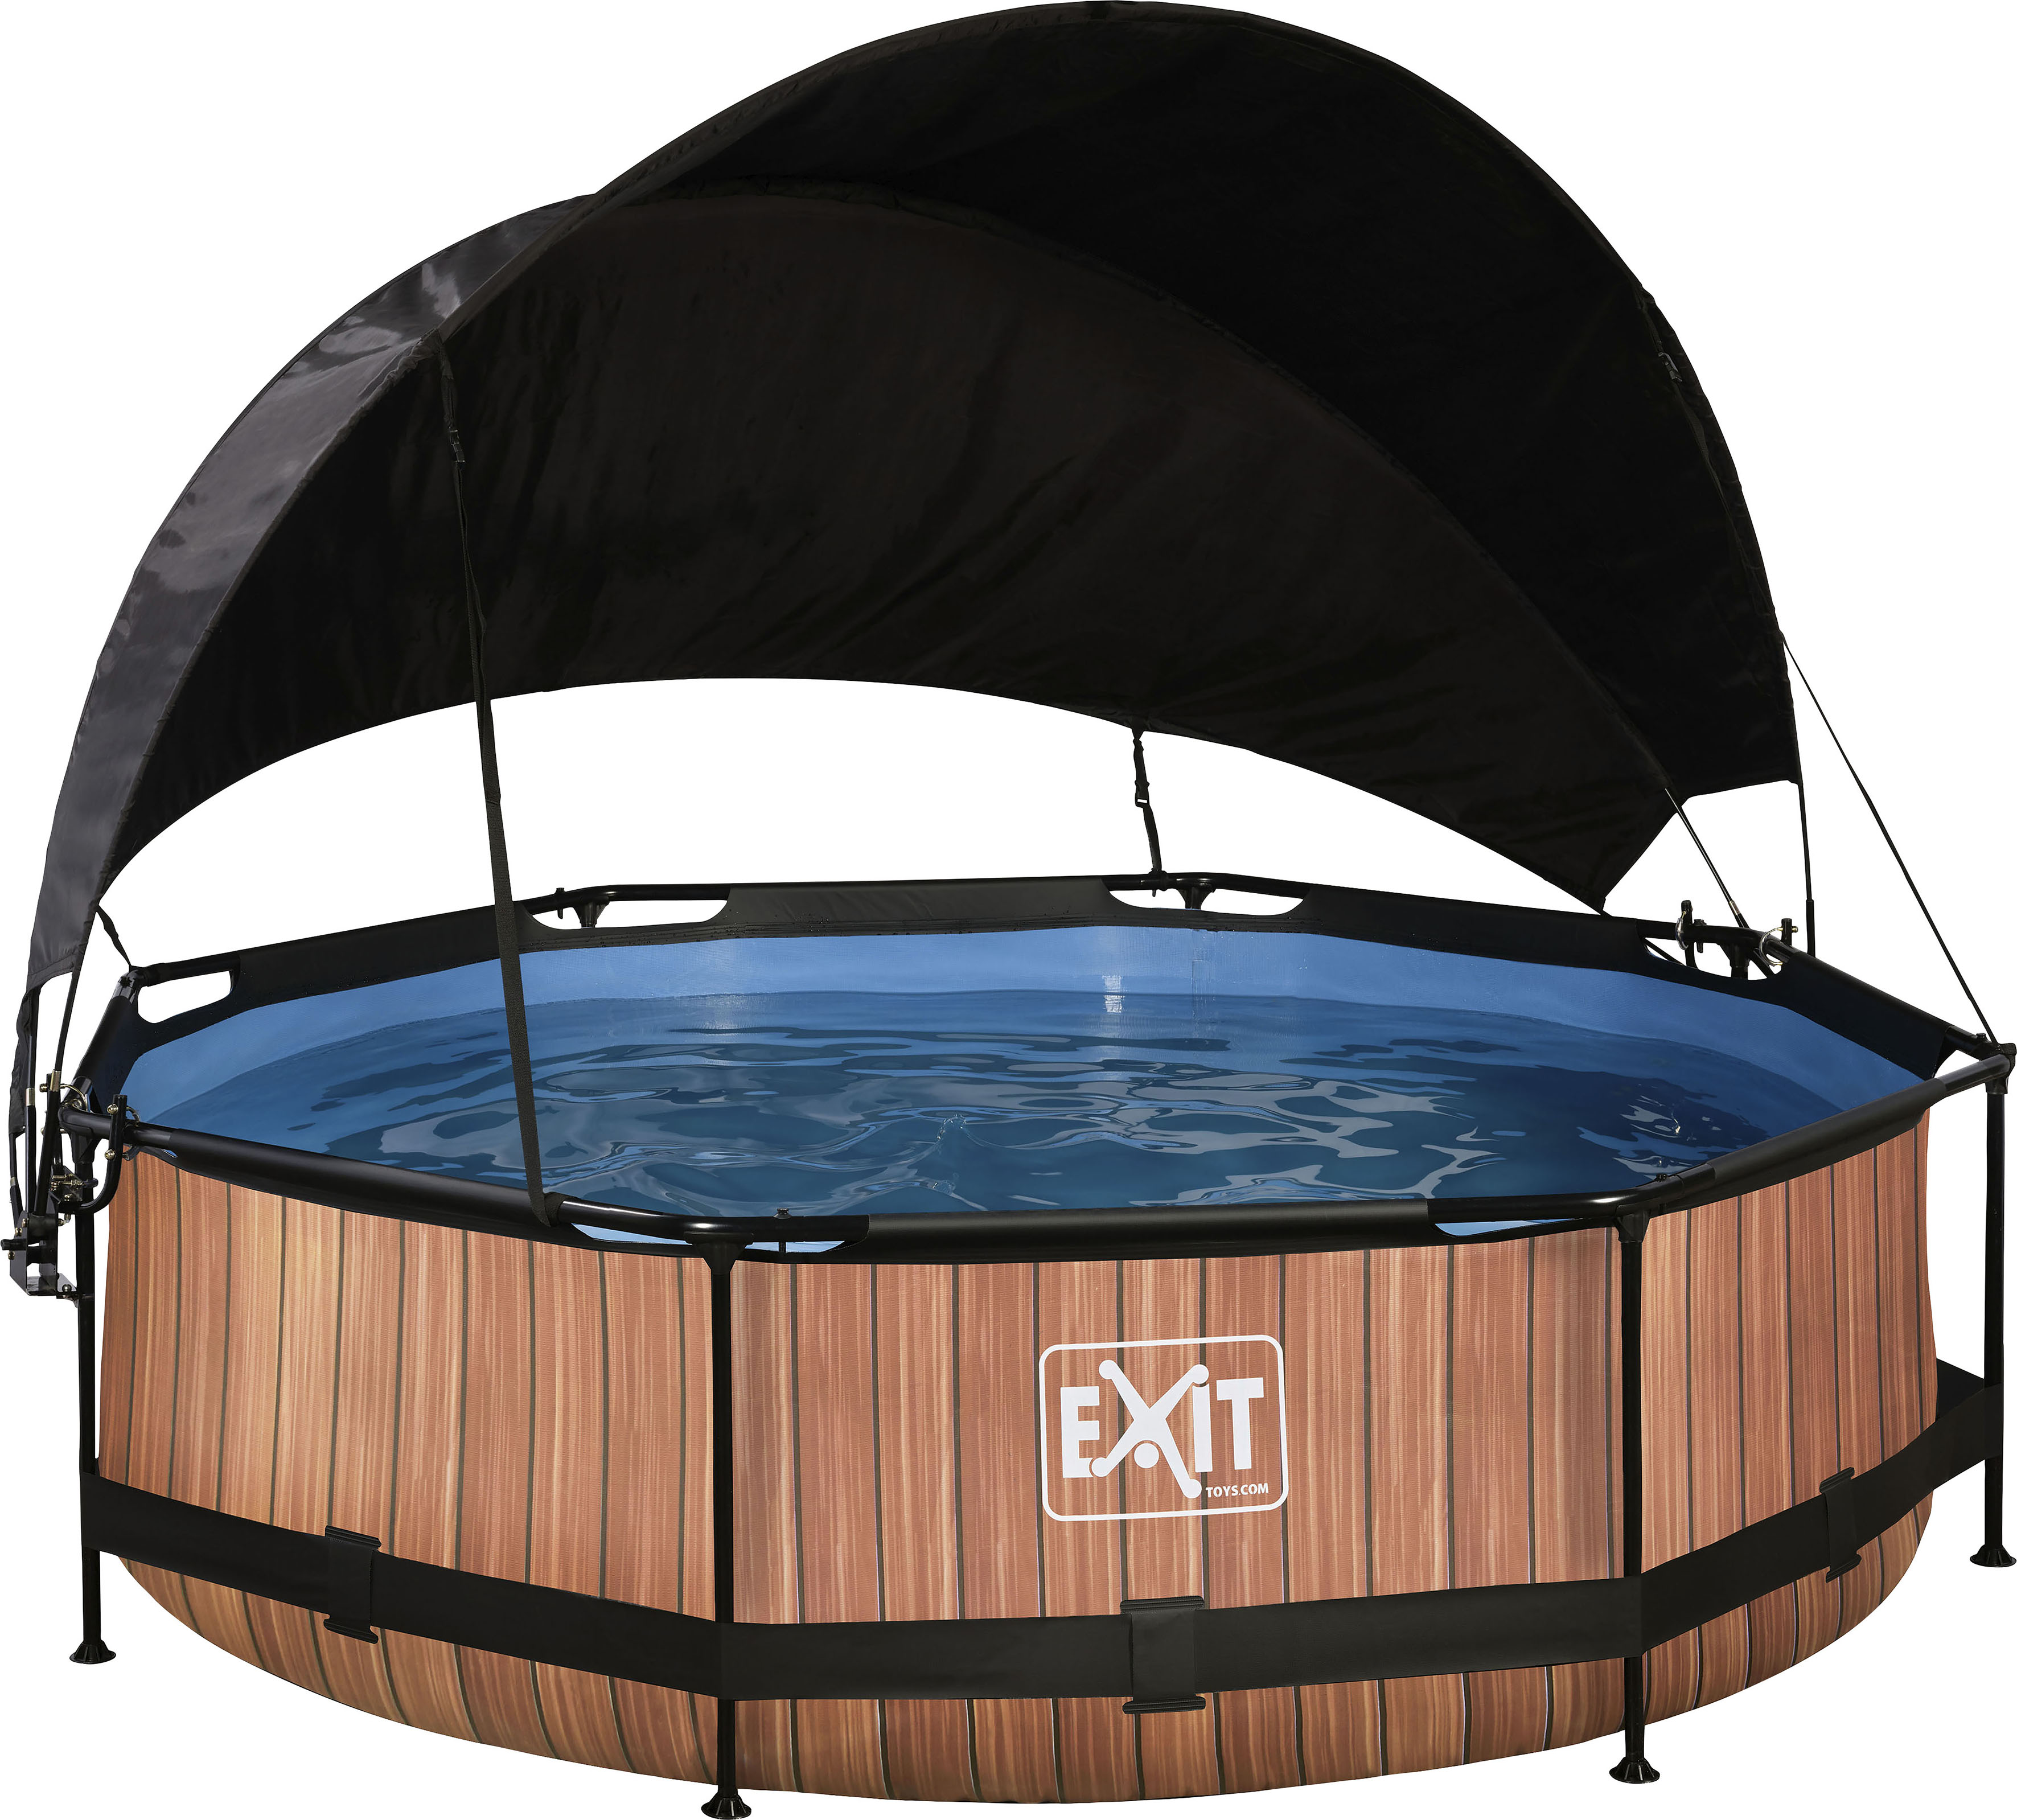 EXIT Wood Pool Braun ø 300 x 76 cm m. Filterpumpe u. Sonnensegel günstig online kaufen